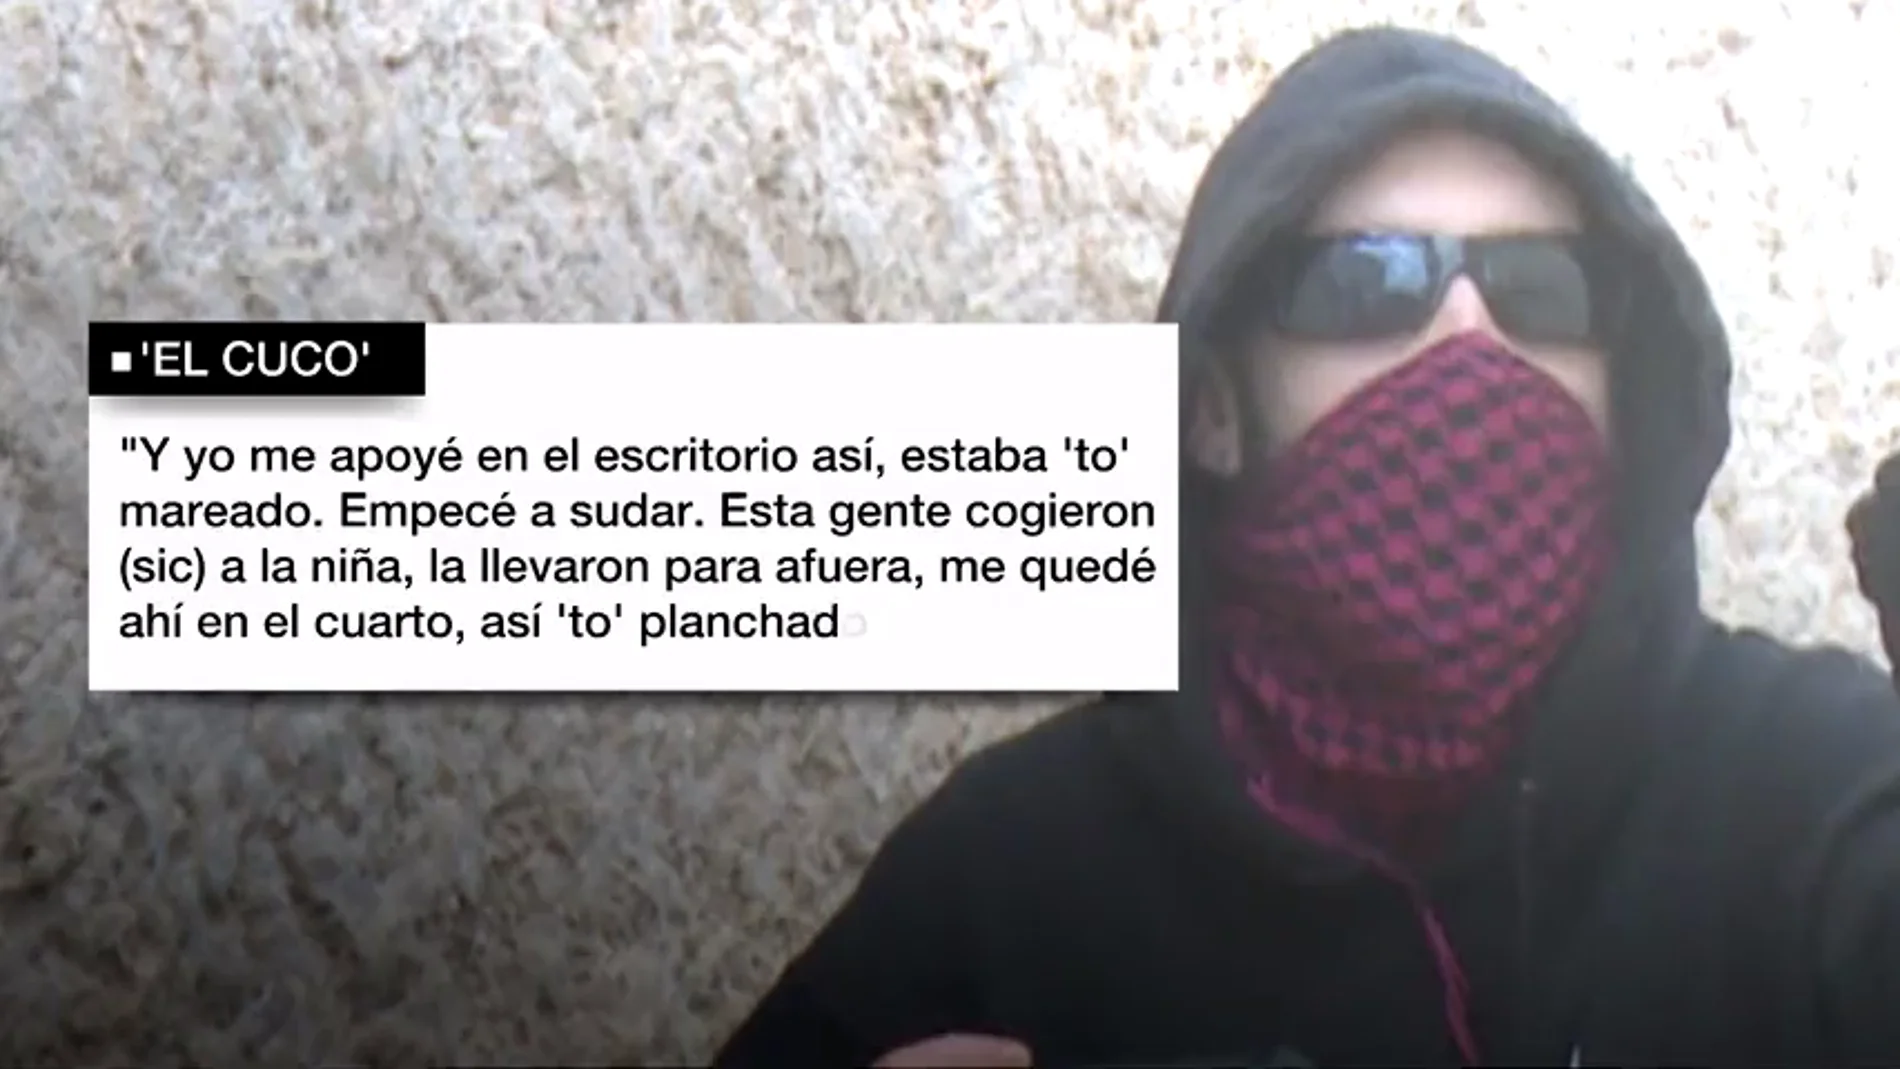 VÍDEO REEMPLAZO | Los audios de la confesión de El Cuco que le llevarán de nuevo ante el juez por el crimen de Marta del Castillo: "Enganché la fregona y fregué dos pasadas"